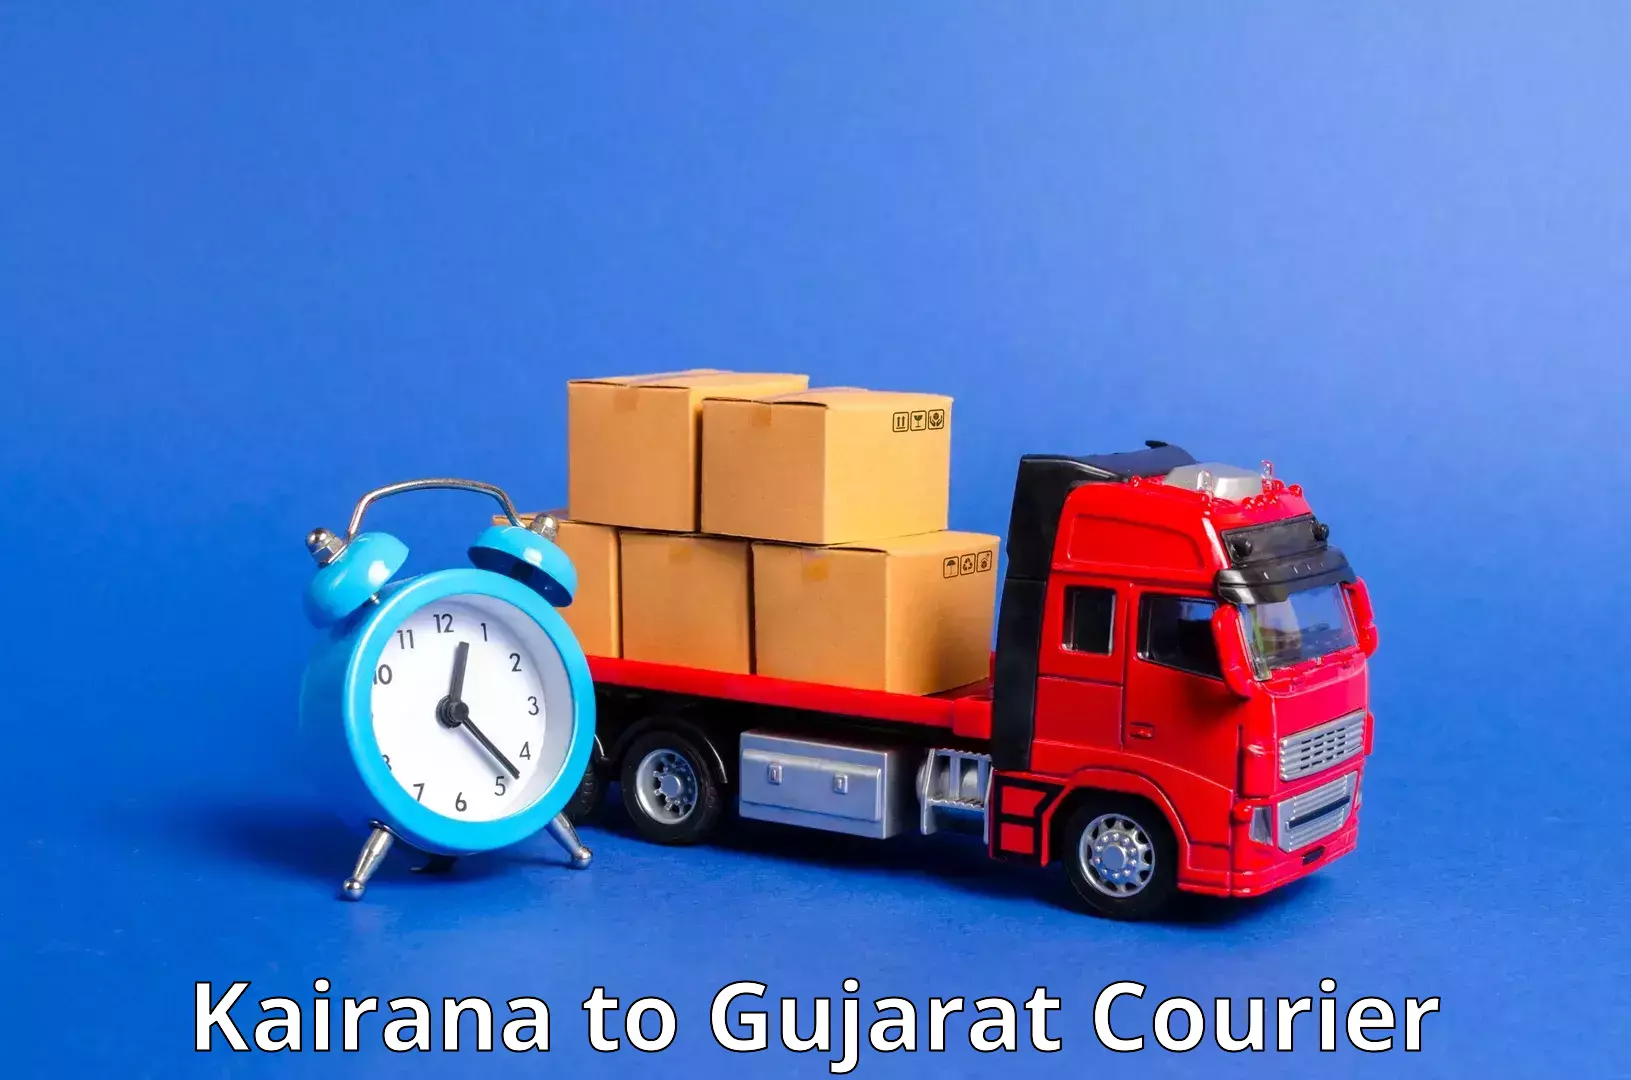 Doorstep delivery service Kairana to Jhagadia